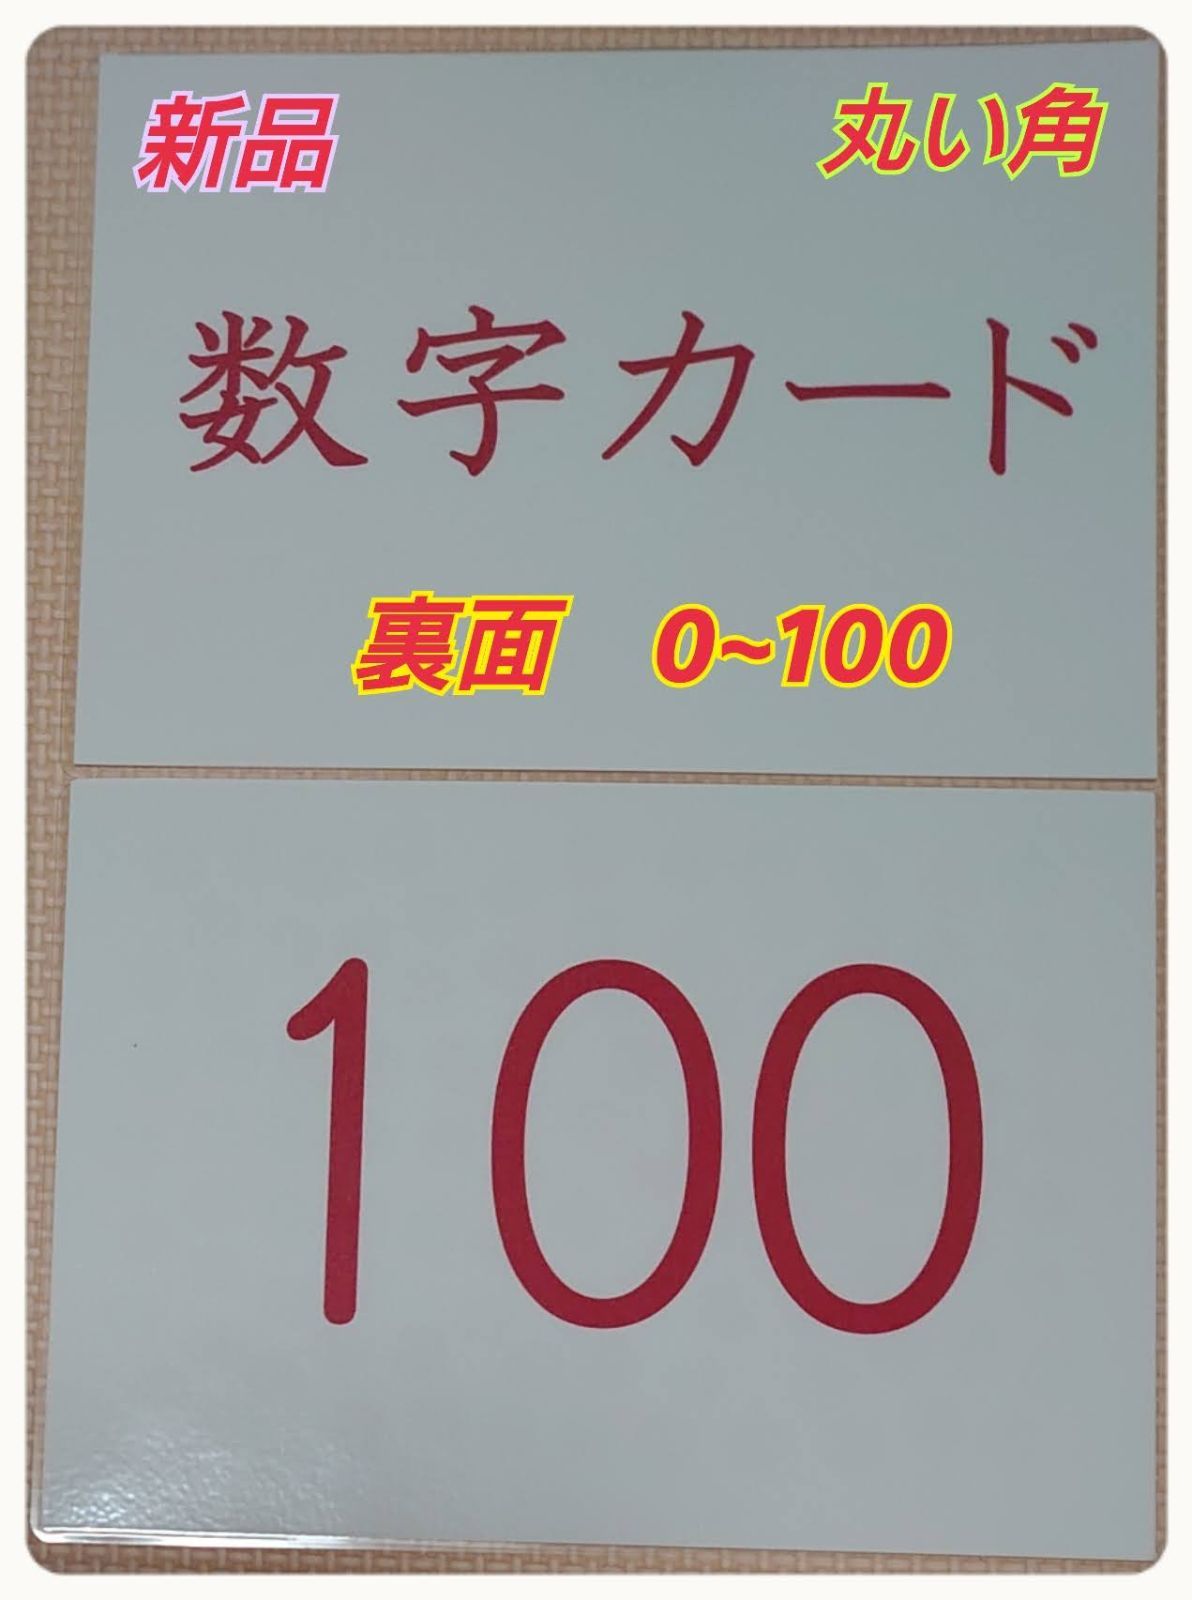 新品〘０歳から始める〙ドッツカード【0〜100】算数記号、袋付 